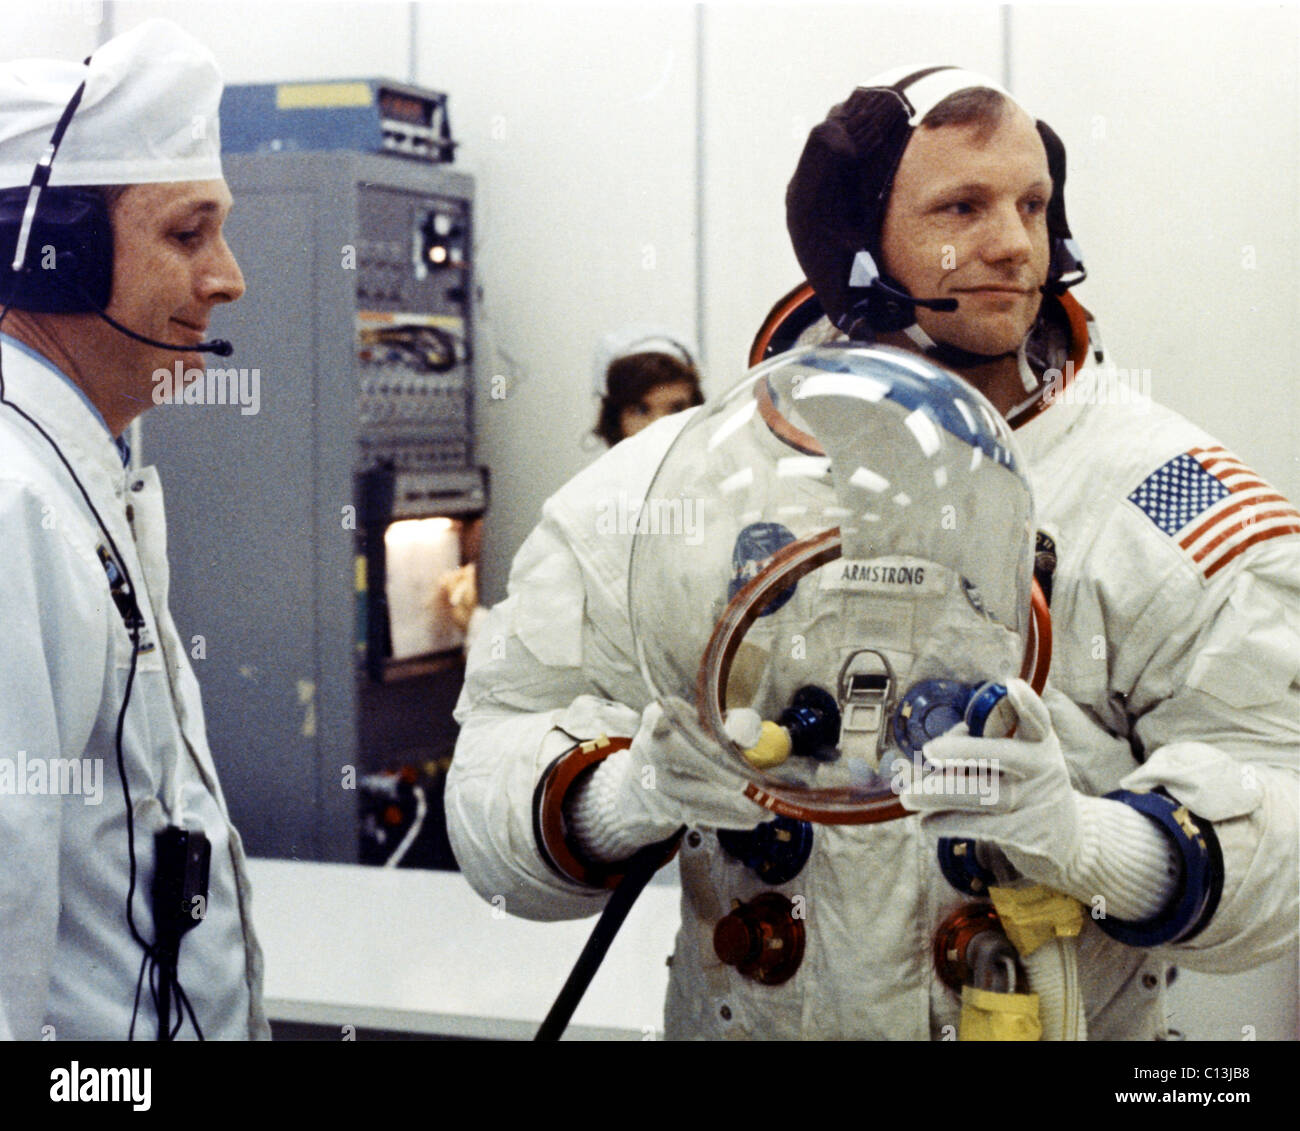 NEIL ARMSTRONG, Vorbereitung für Apollo 11-Mission, Juli 1969. (c) NASA. Höflichkeit: Everett Collection. Stockfoto